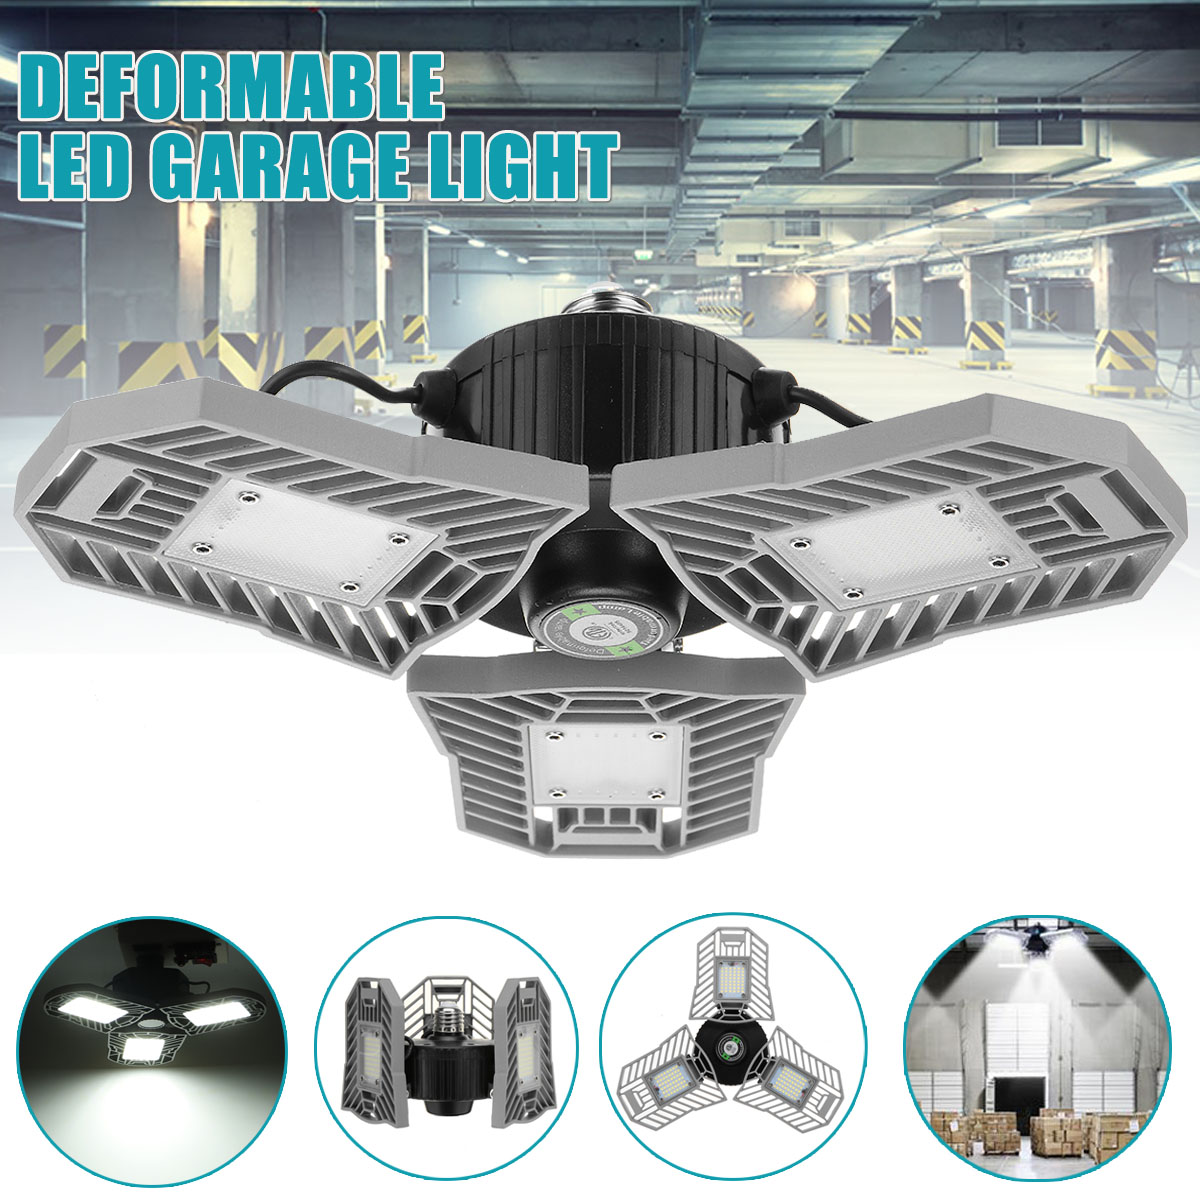 60W-85-265V-Deformable-LED-Garage-Light-Super-Bright-Ceiling-Lamp-E27-Base-1730018-2